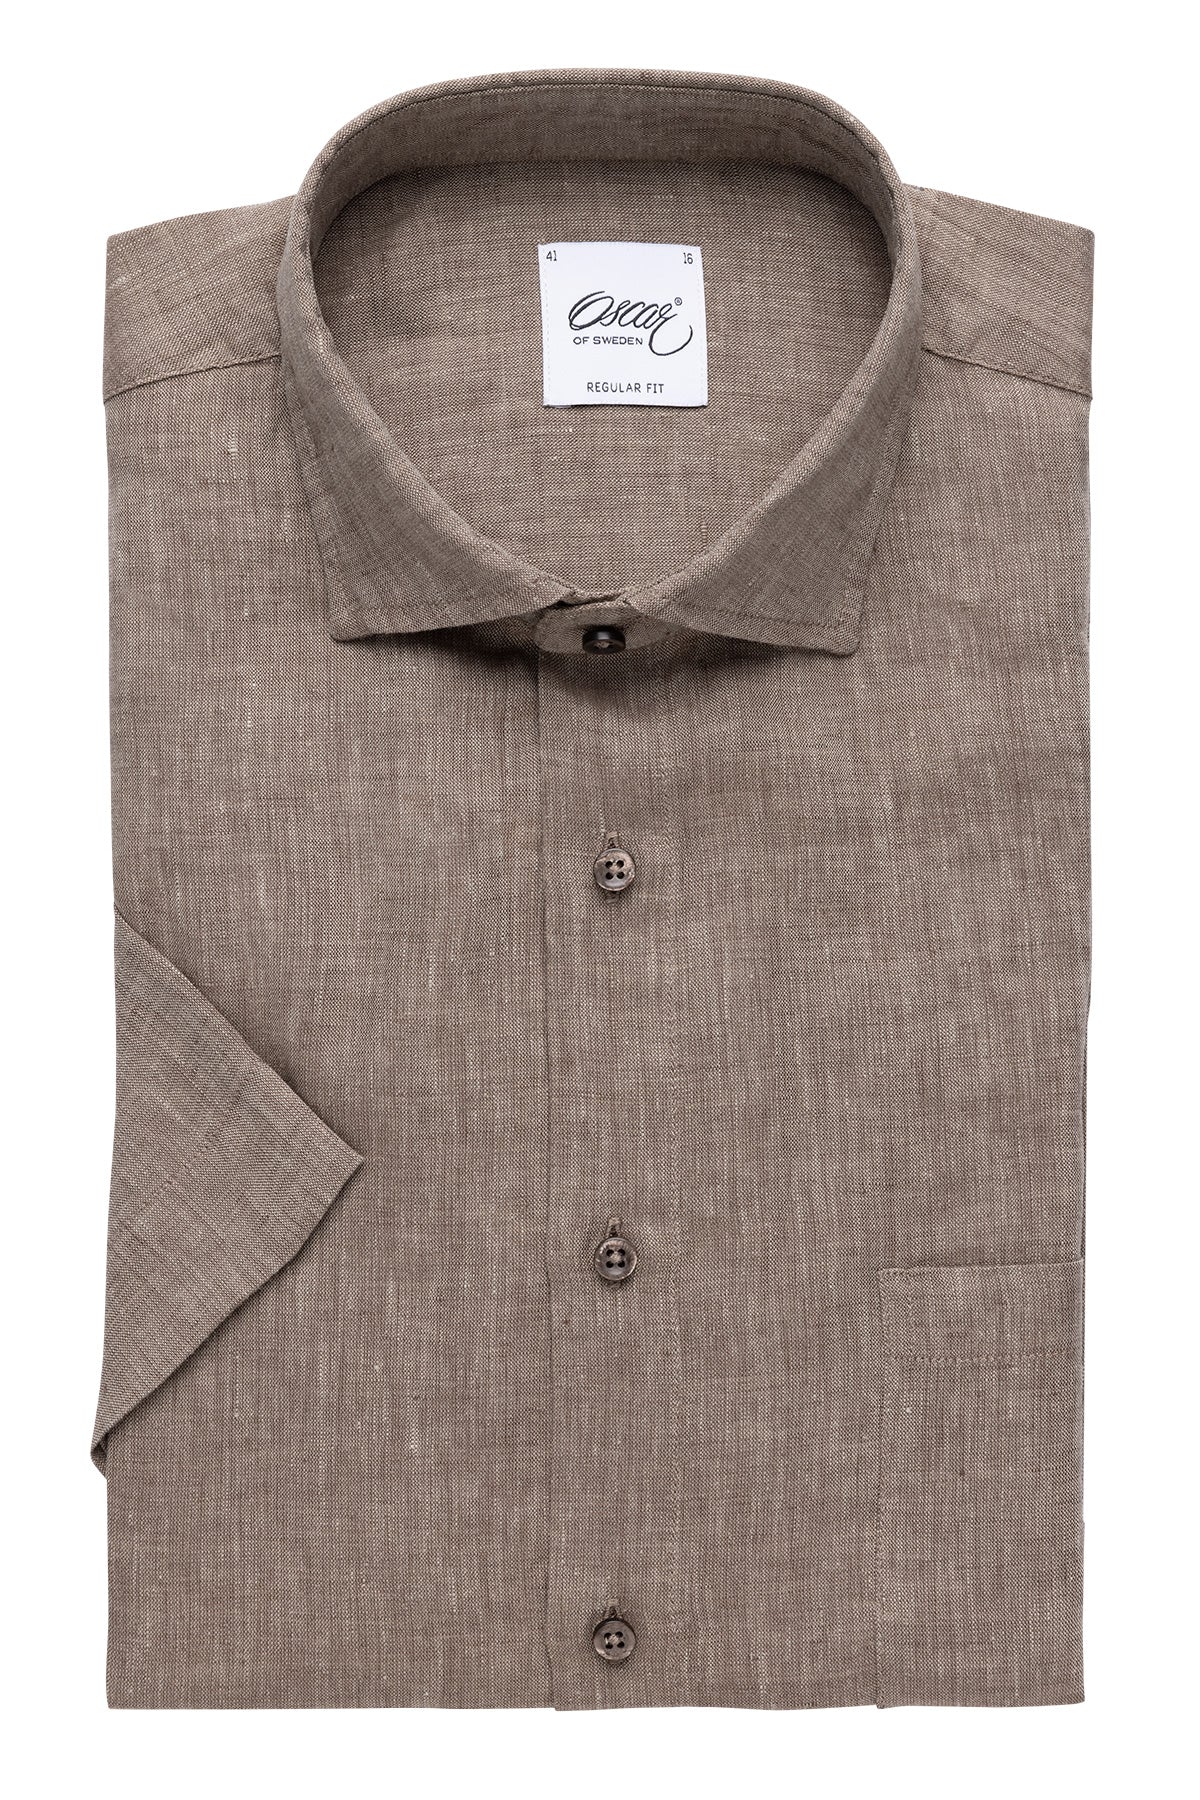 Brown short sleeve regular fit linen shirt